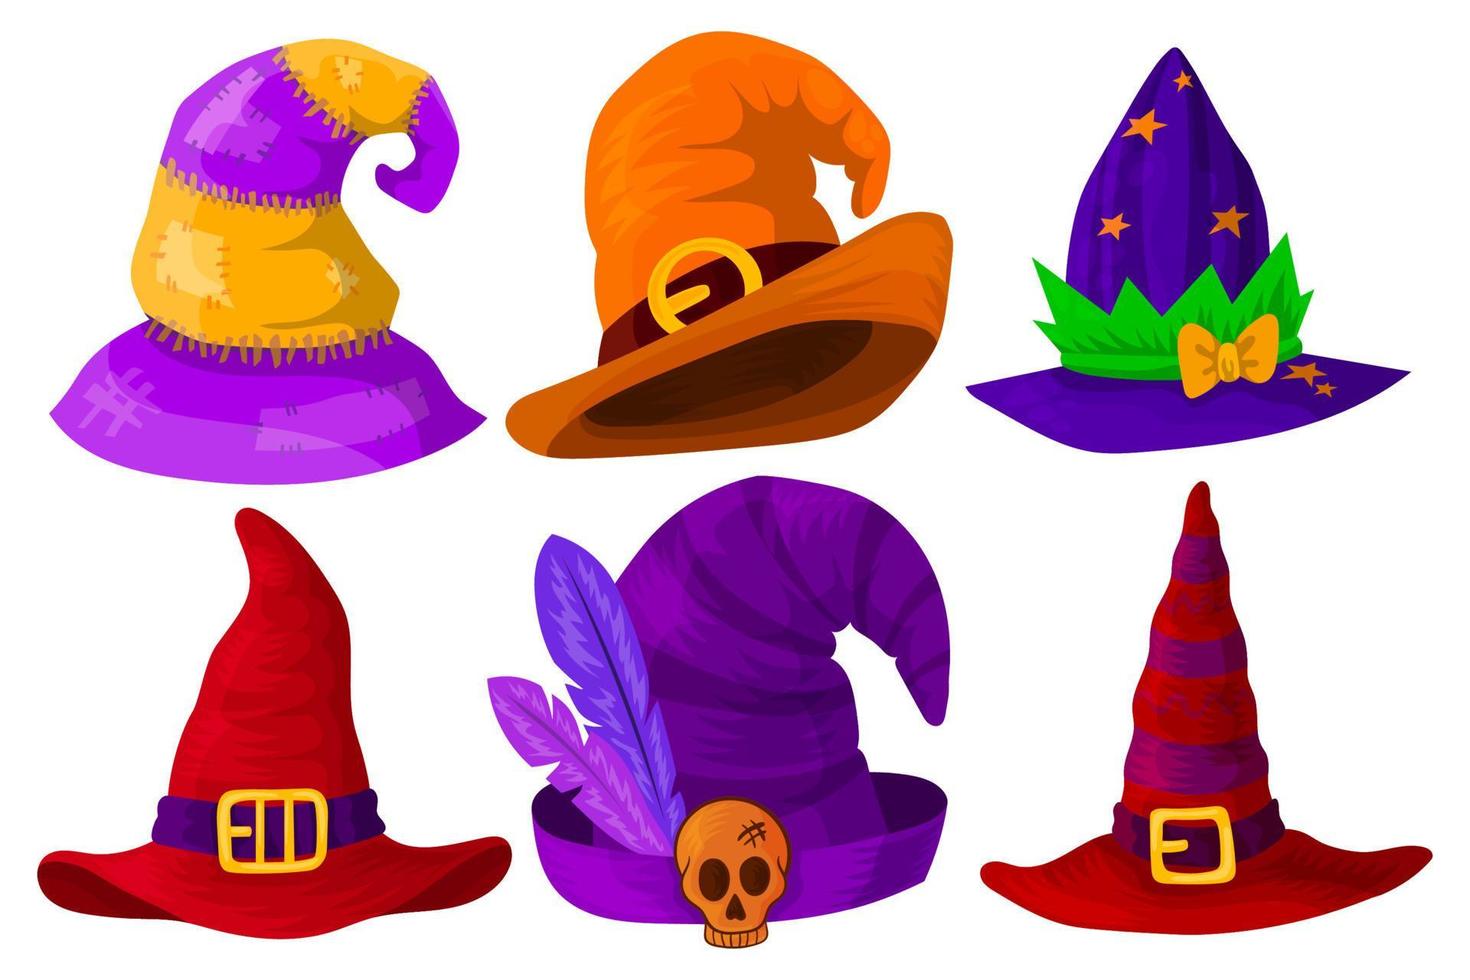 uppsättning av hattar av trollkarlar, magiker, häxor av annorlunda färger och former. isolerat objekt på en vit bakgrund. vektor illustration.